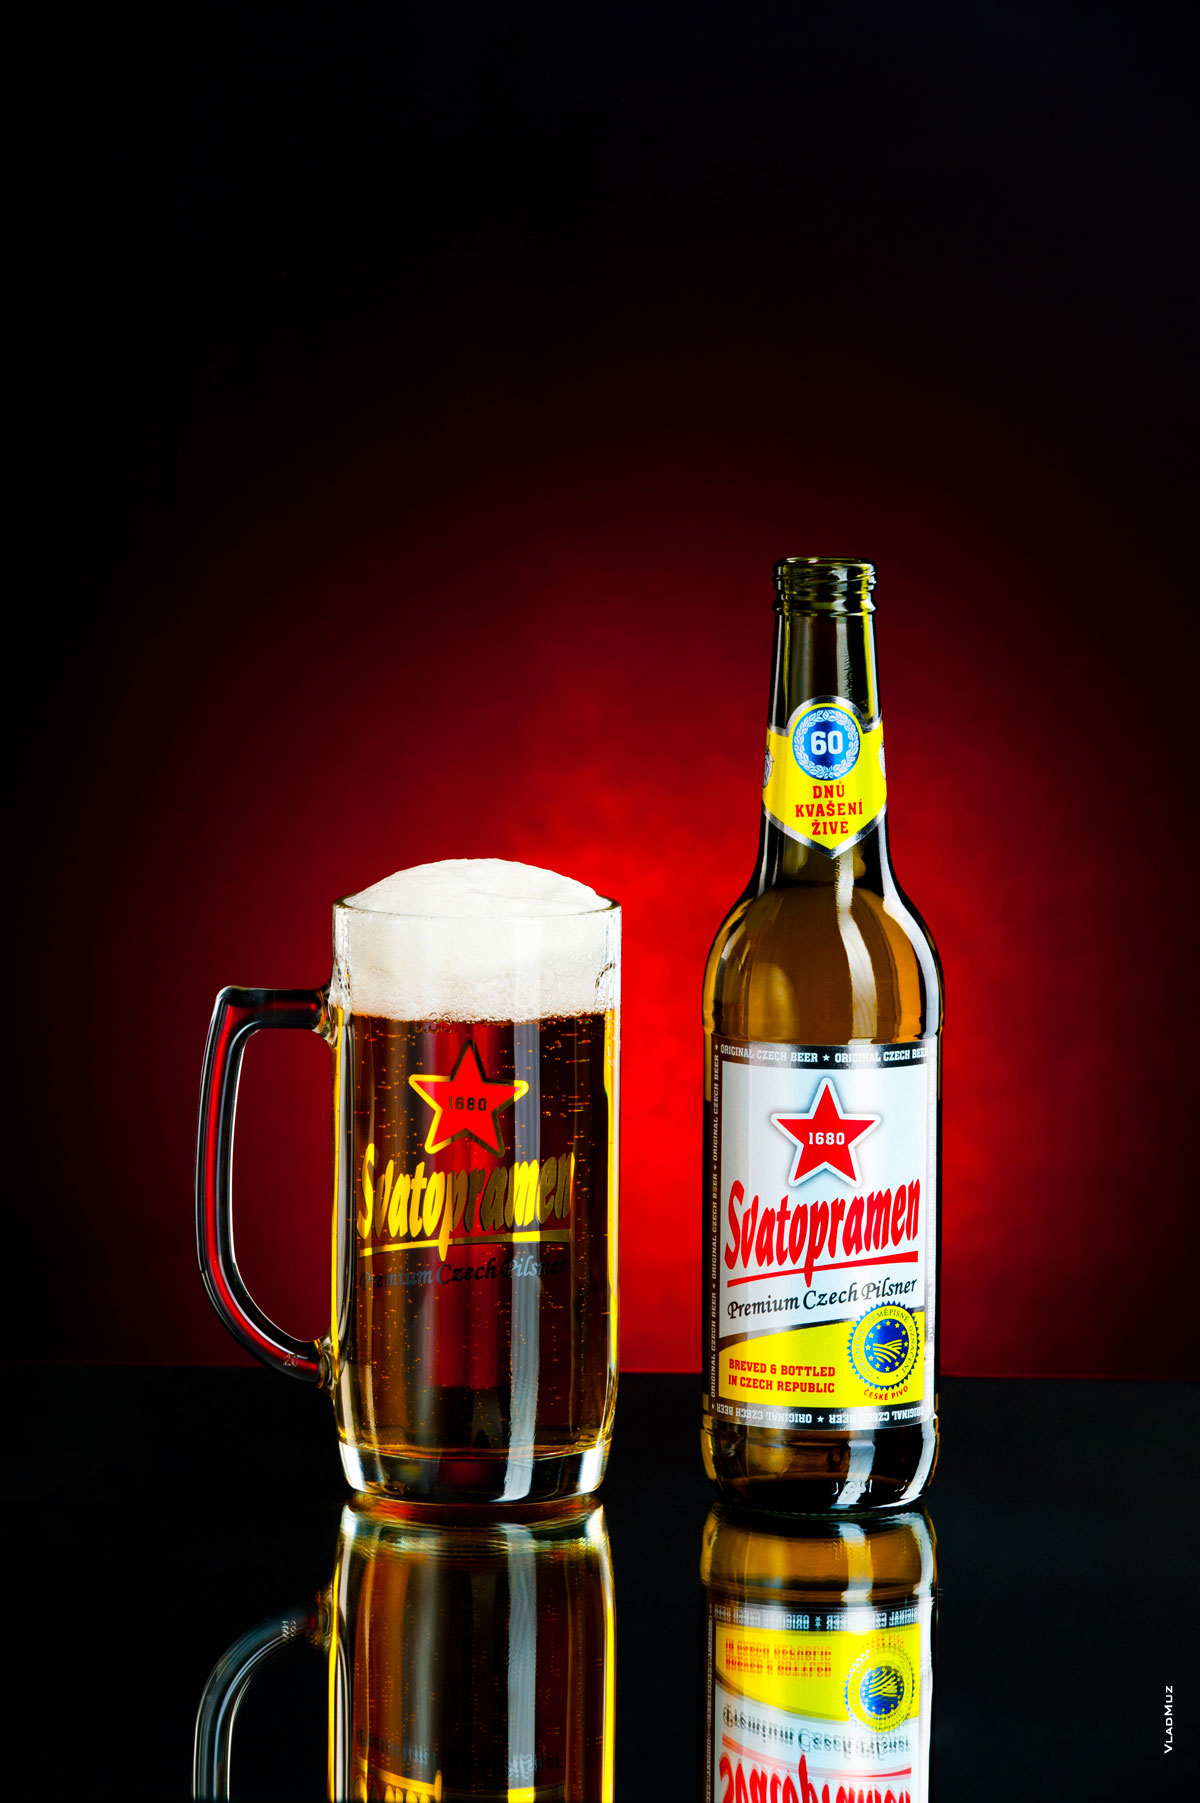 Фото светлого пива «Святопрамен» в бокале и в бутылке на темно-красном фоне